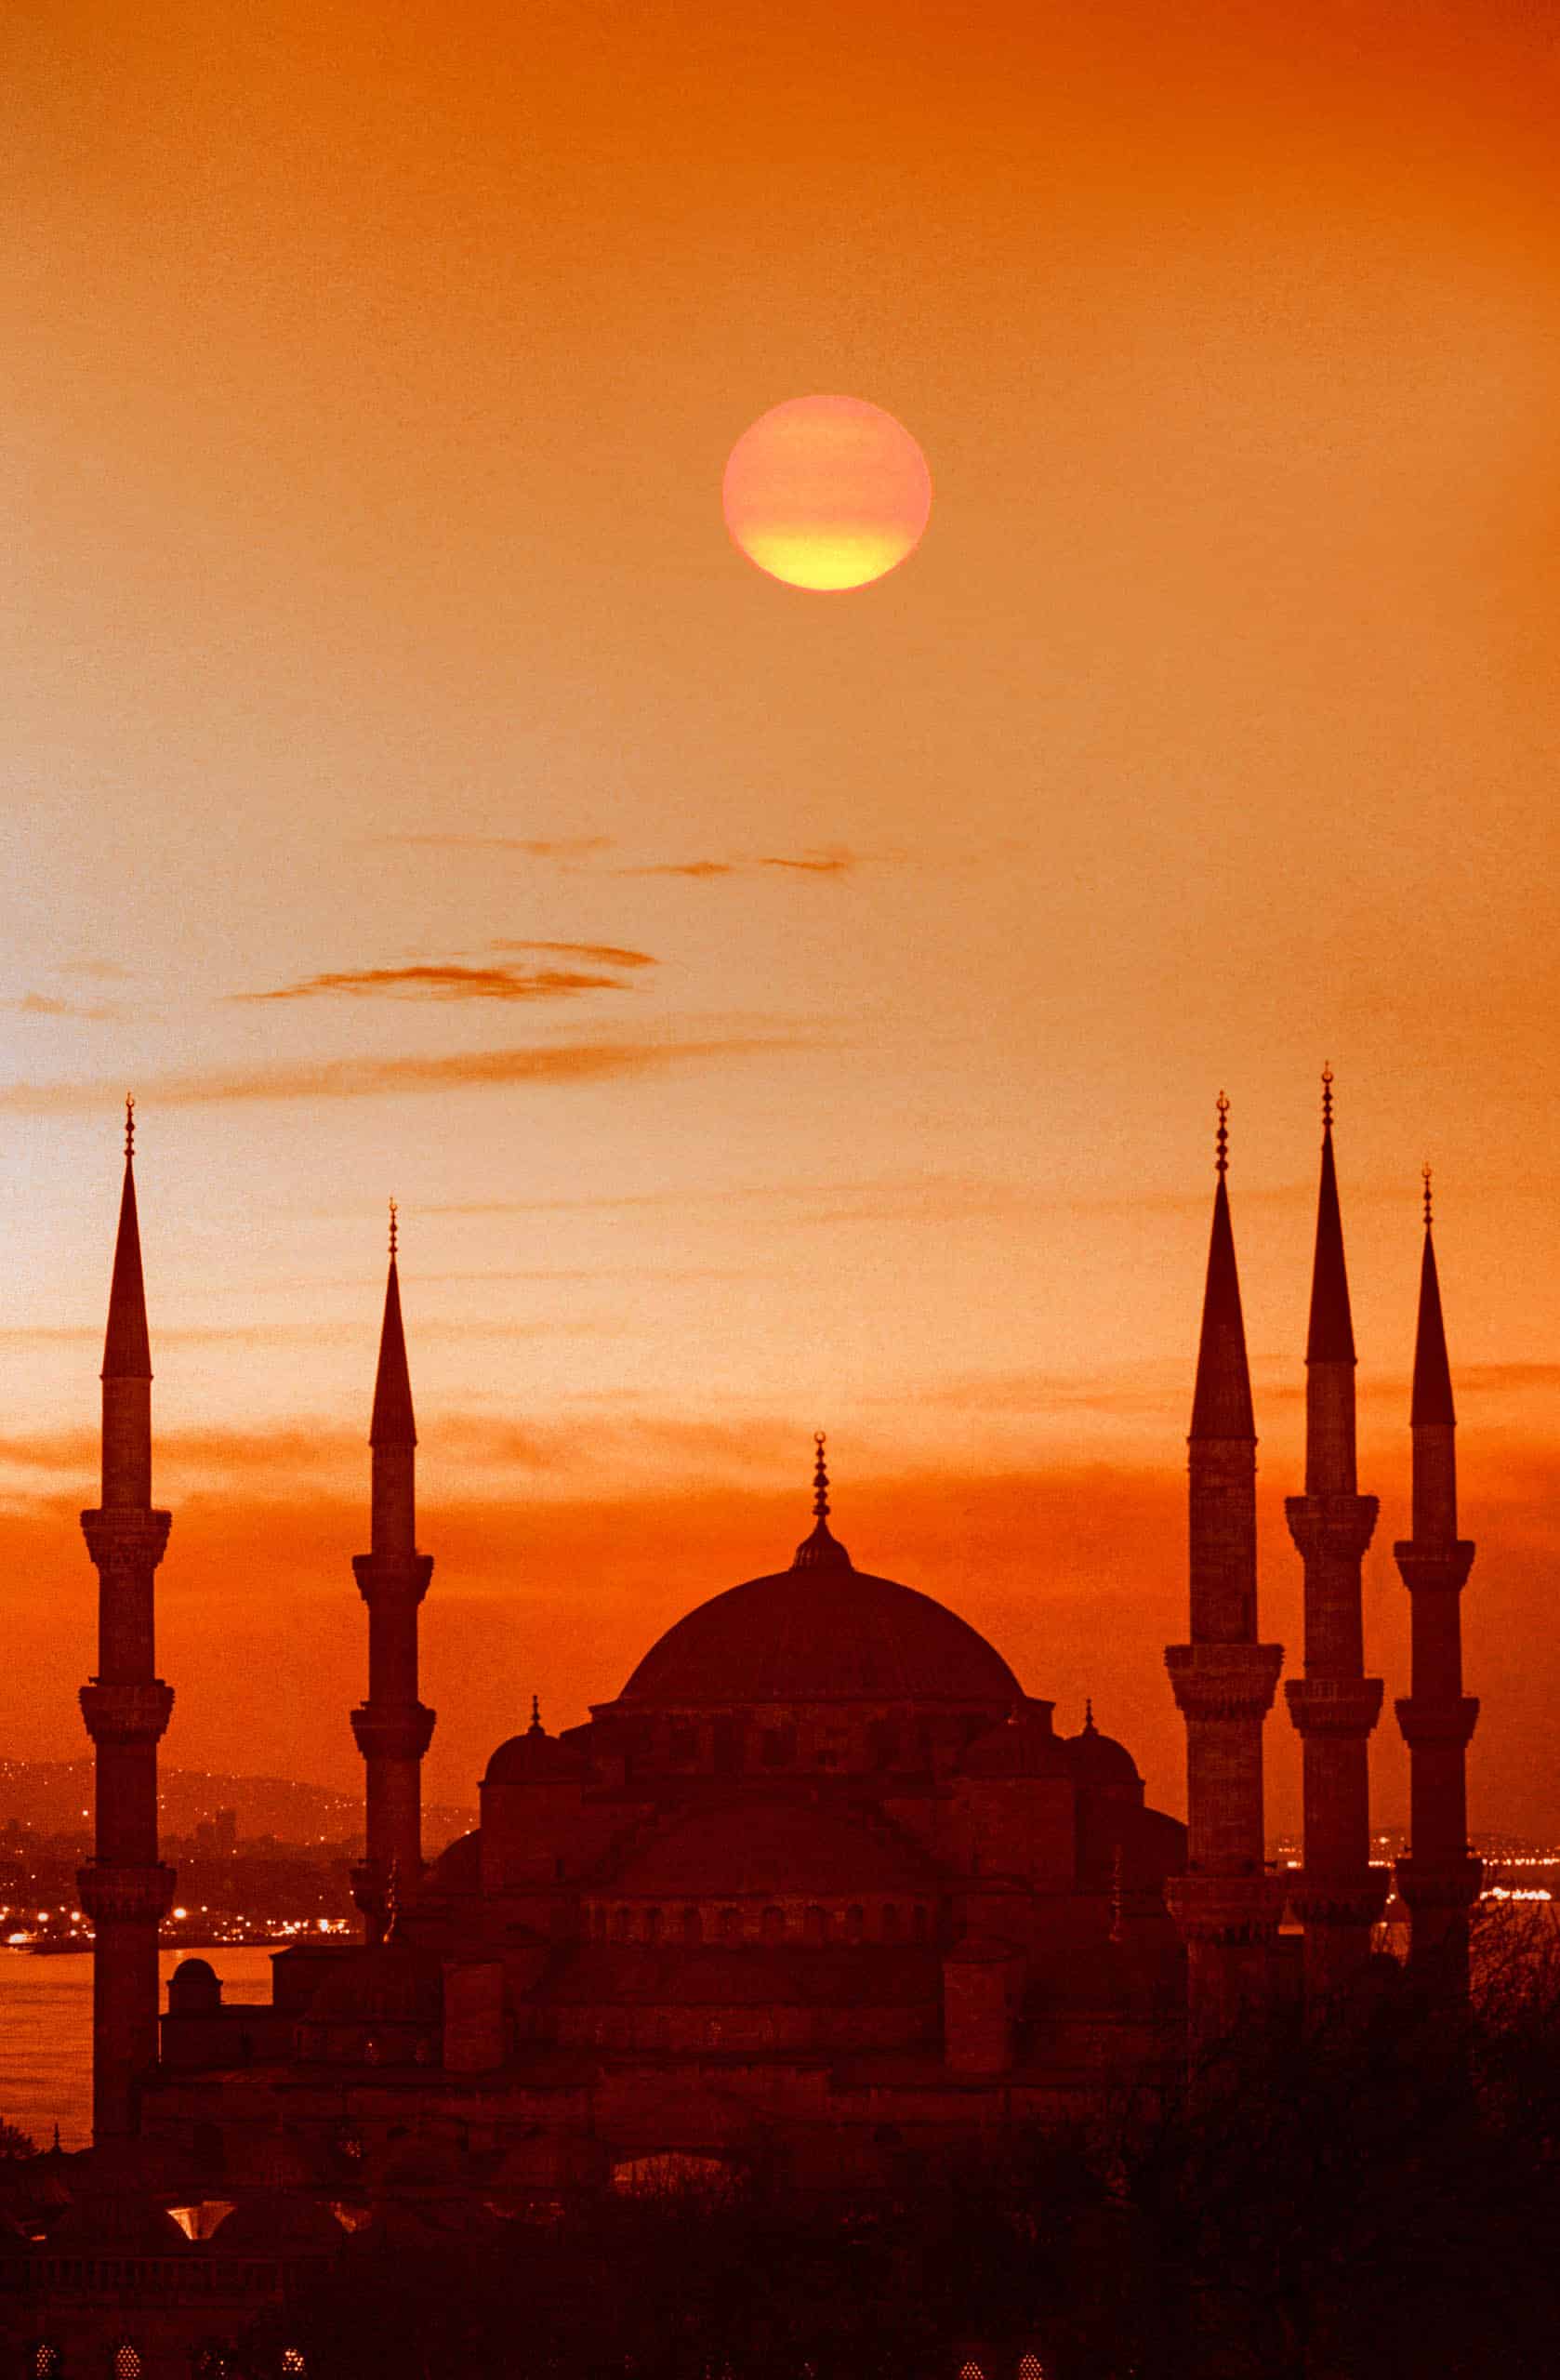 A sunrise in Turkey.